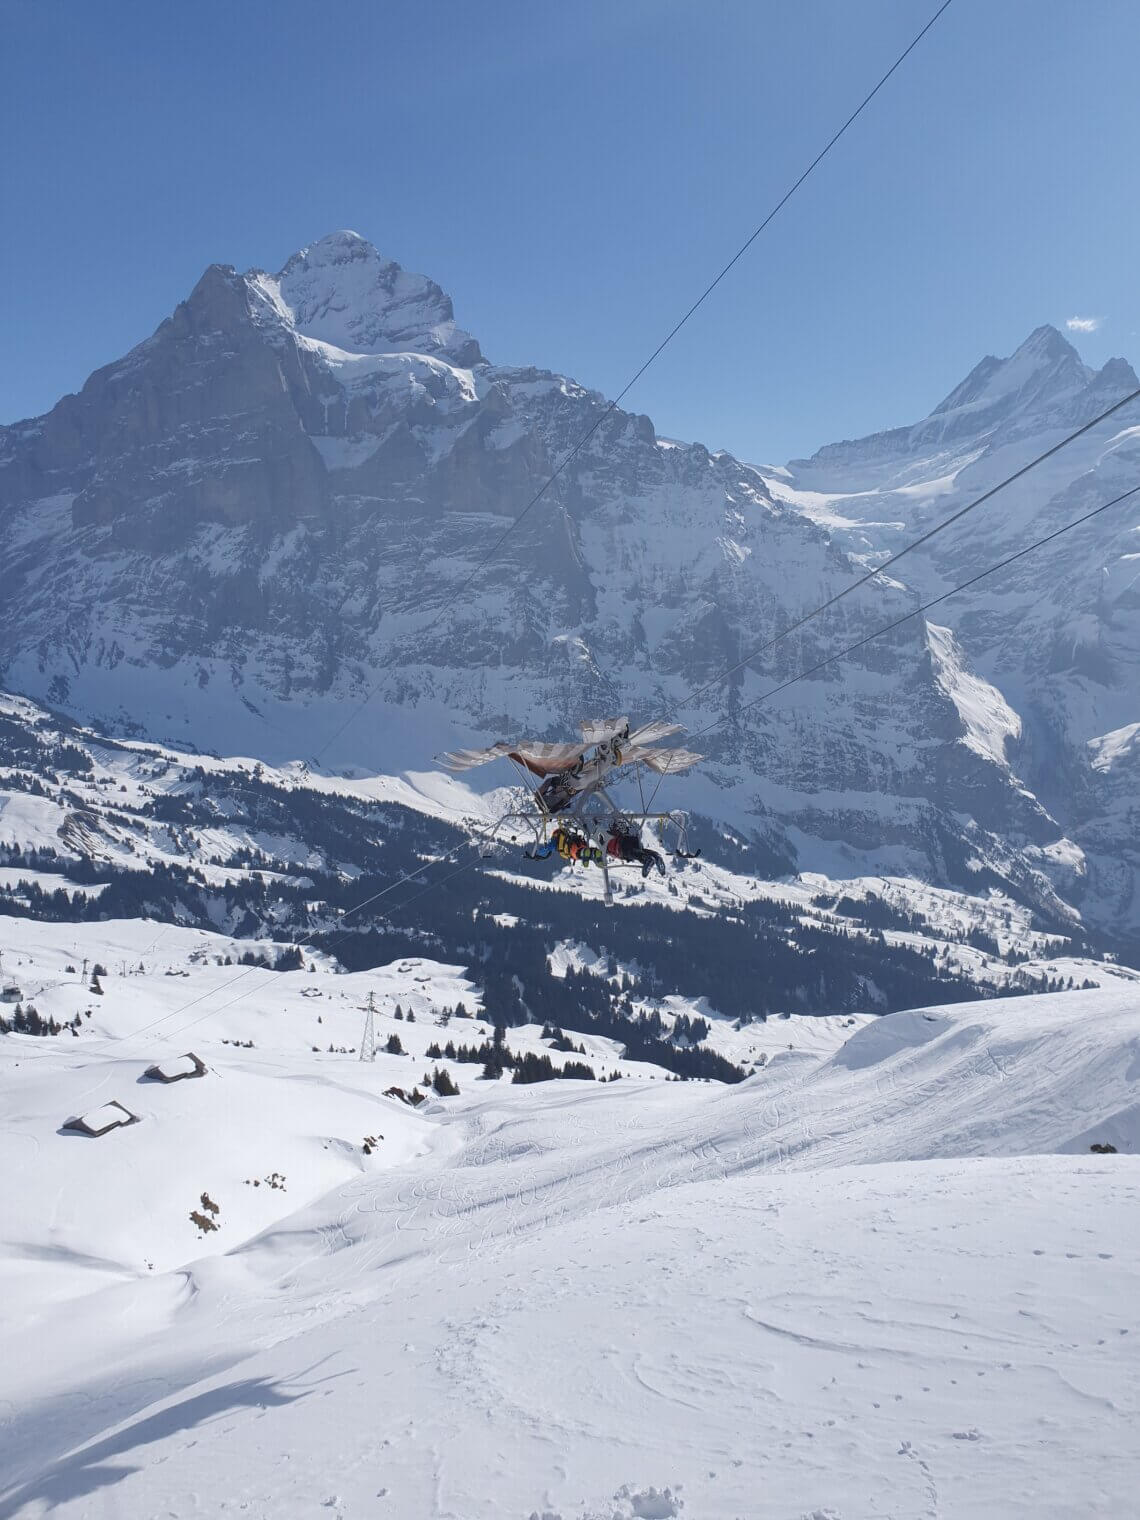 Als een vogel door het winter landschap van de Jungfrauregio.